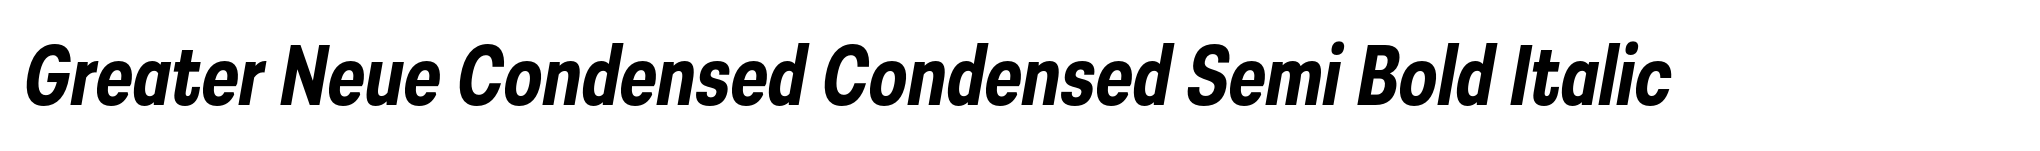 Greater Neue Condensed Condensed Semi Bold Italic image